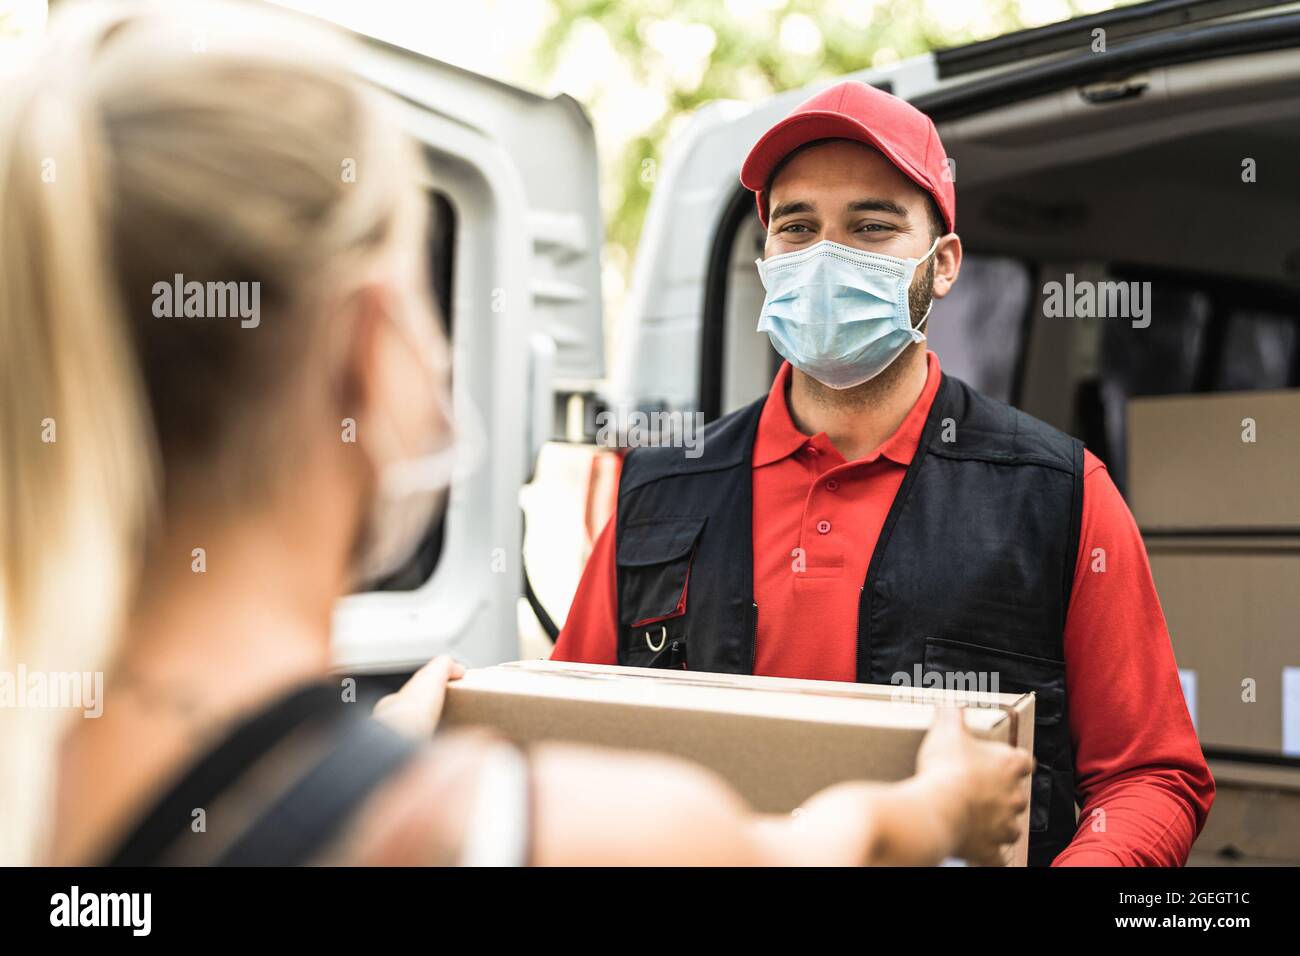 Hombre de entrega en el trabajo con máscara facial - Mujer joven que recibe un pedido en línea del mensajero expreso Foto de stock